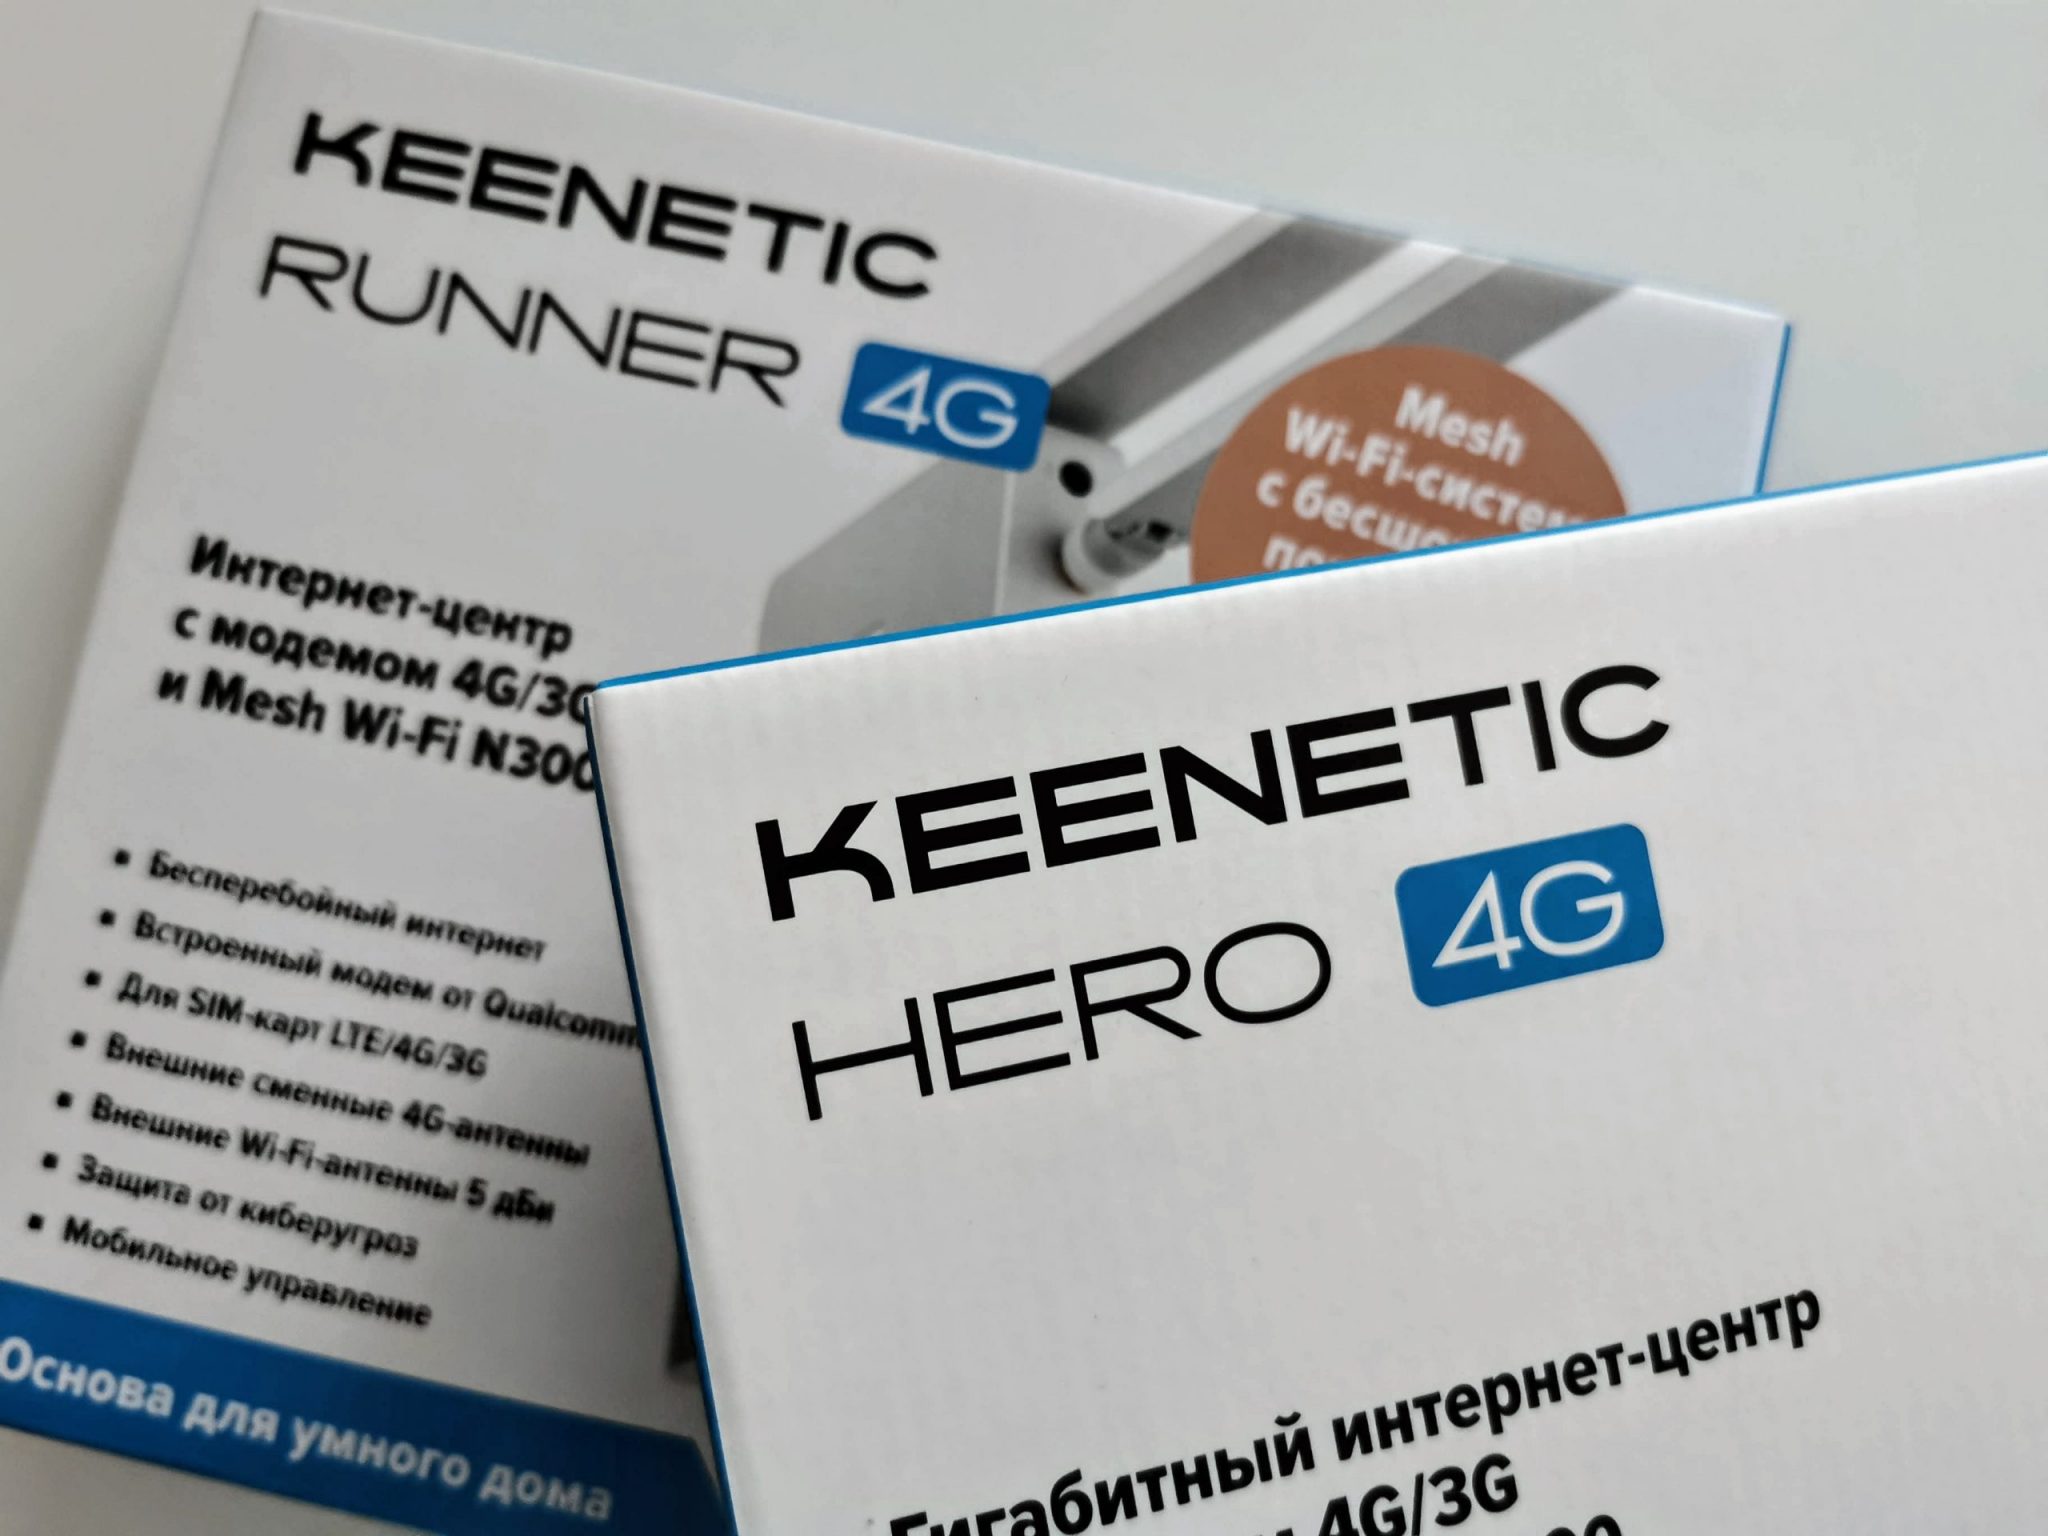 Keenetic Runner 4G